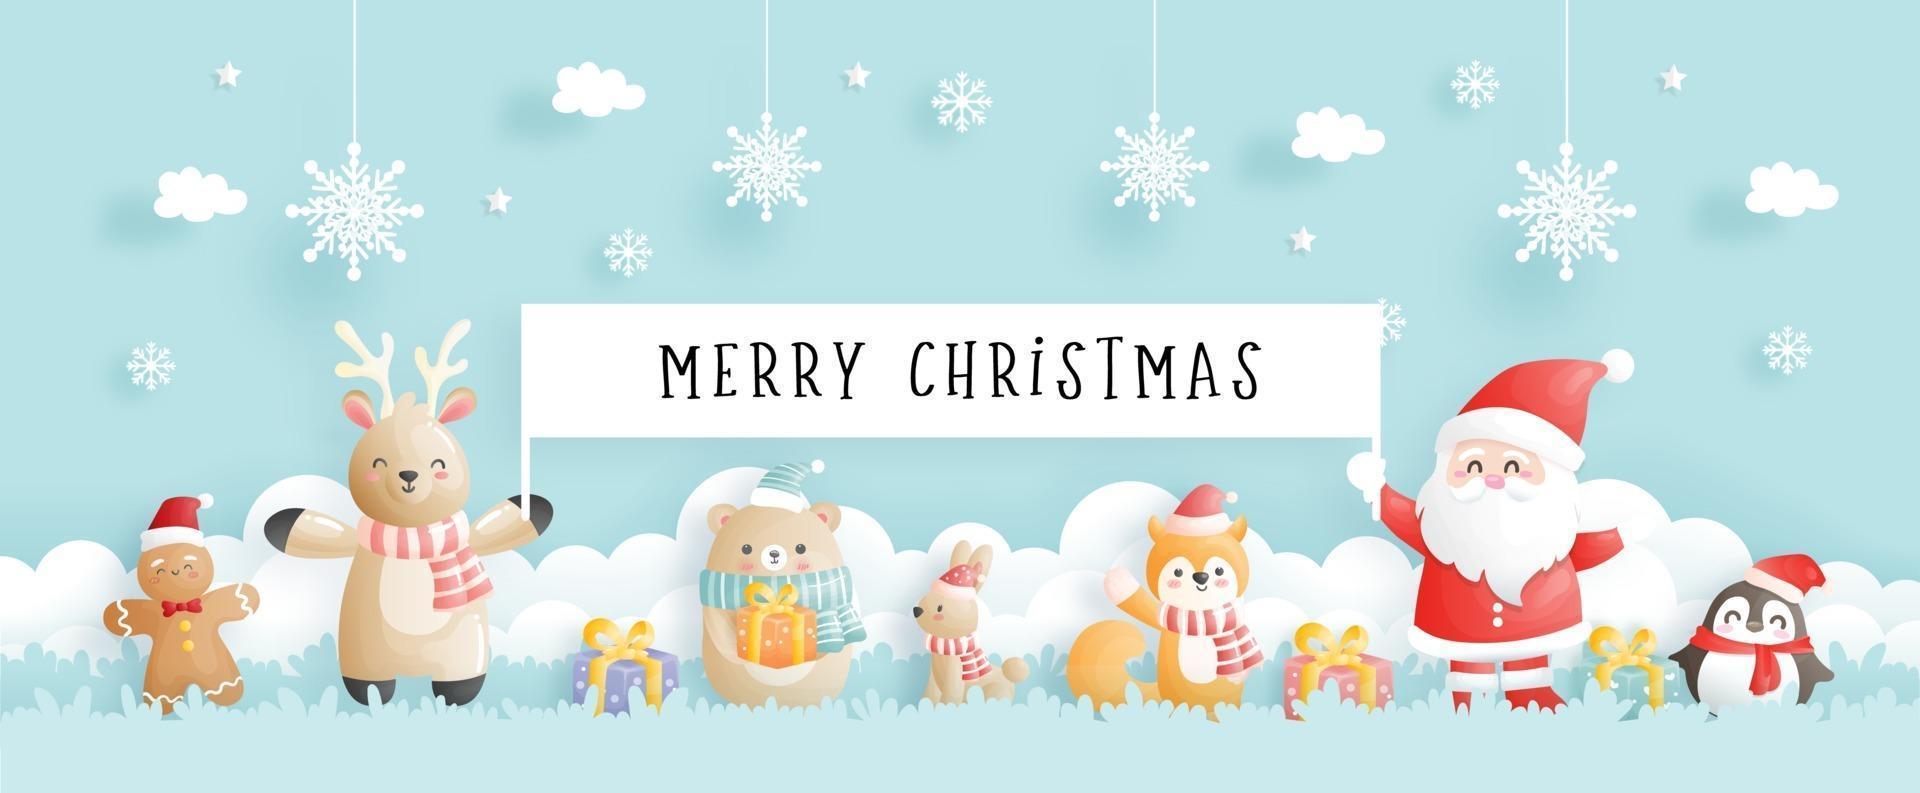 cartão de natal, celebrações com o papai noel e amigos, vetor